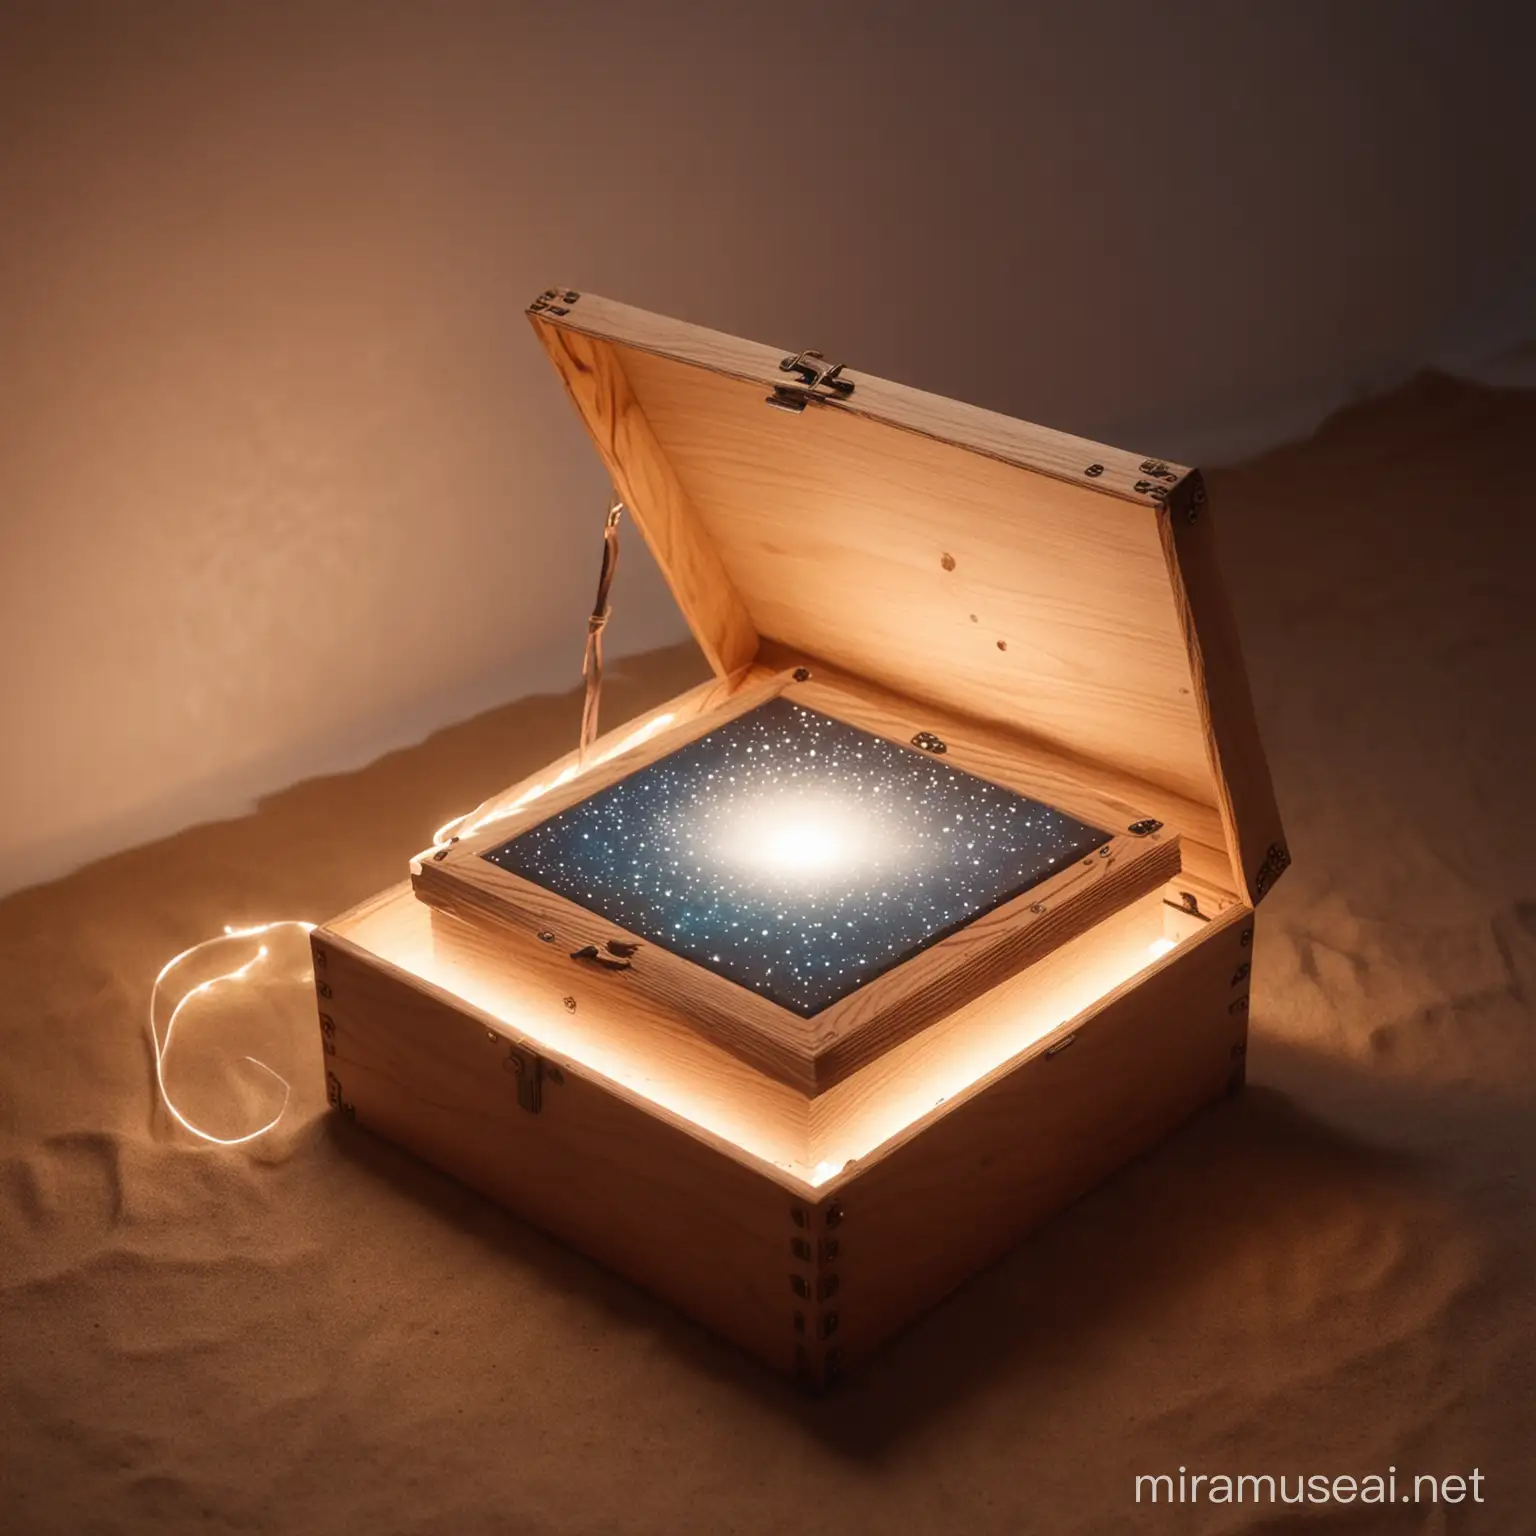 Enchanted Dream Box Illuminating Real and Digital Worlds